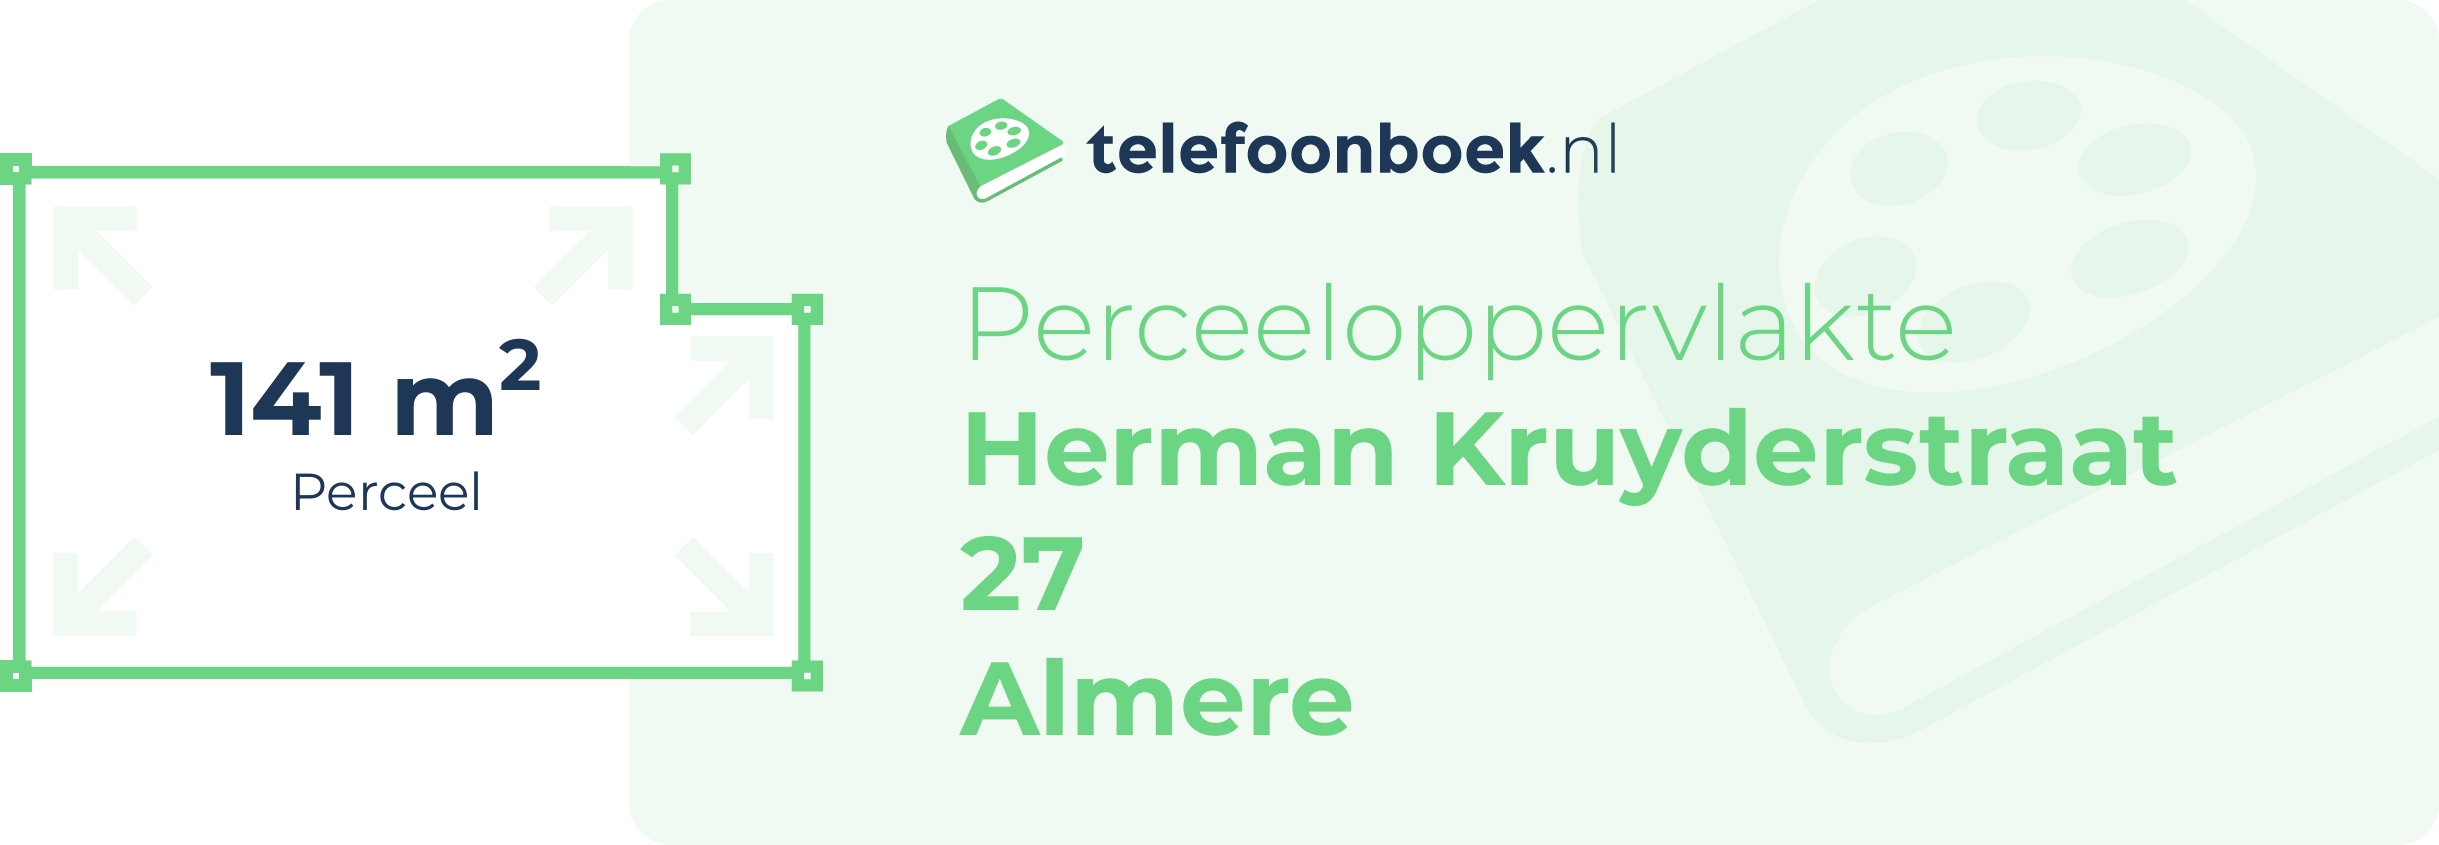 Perceeloppervlakte Herman Kruyderstraat 27 Almere